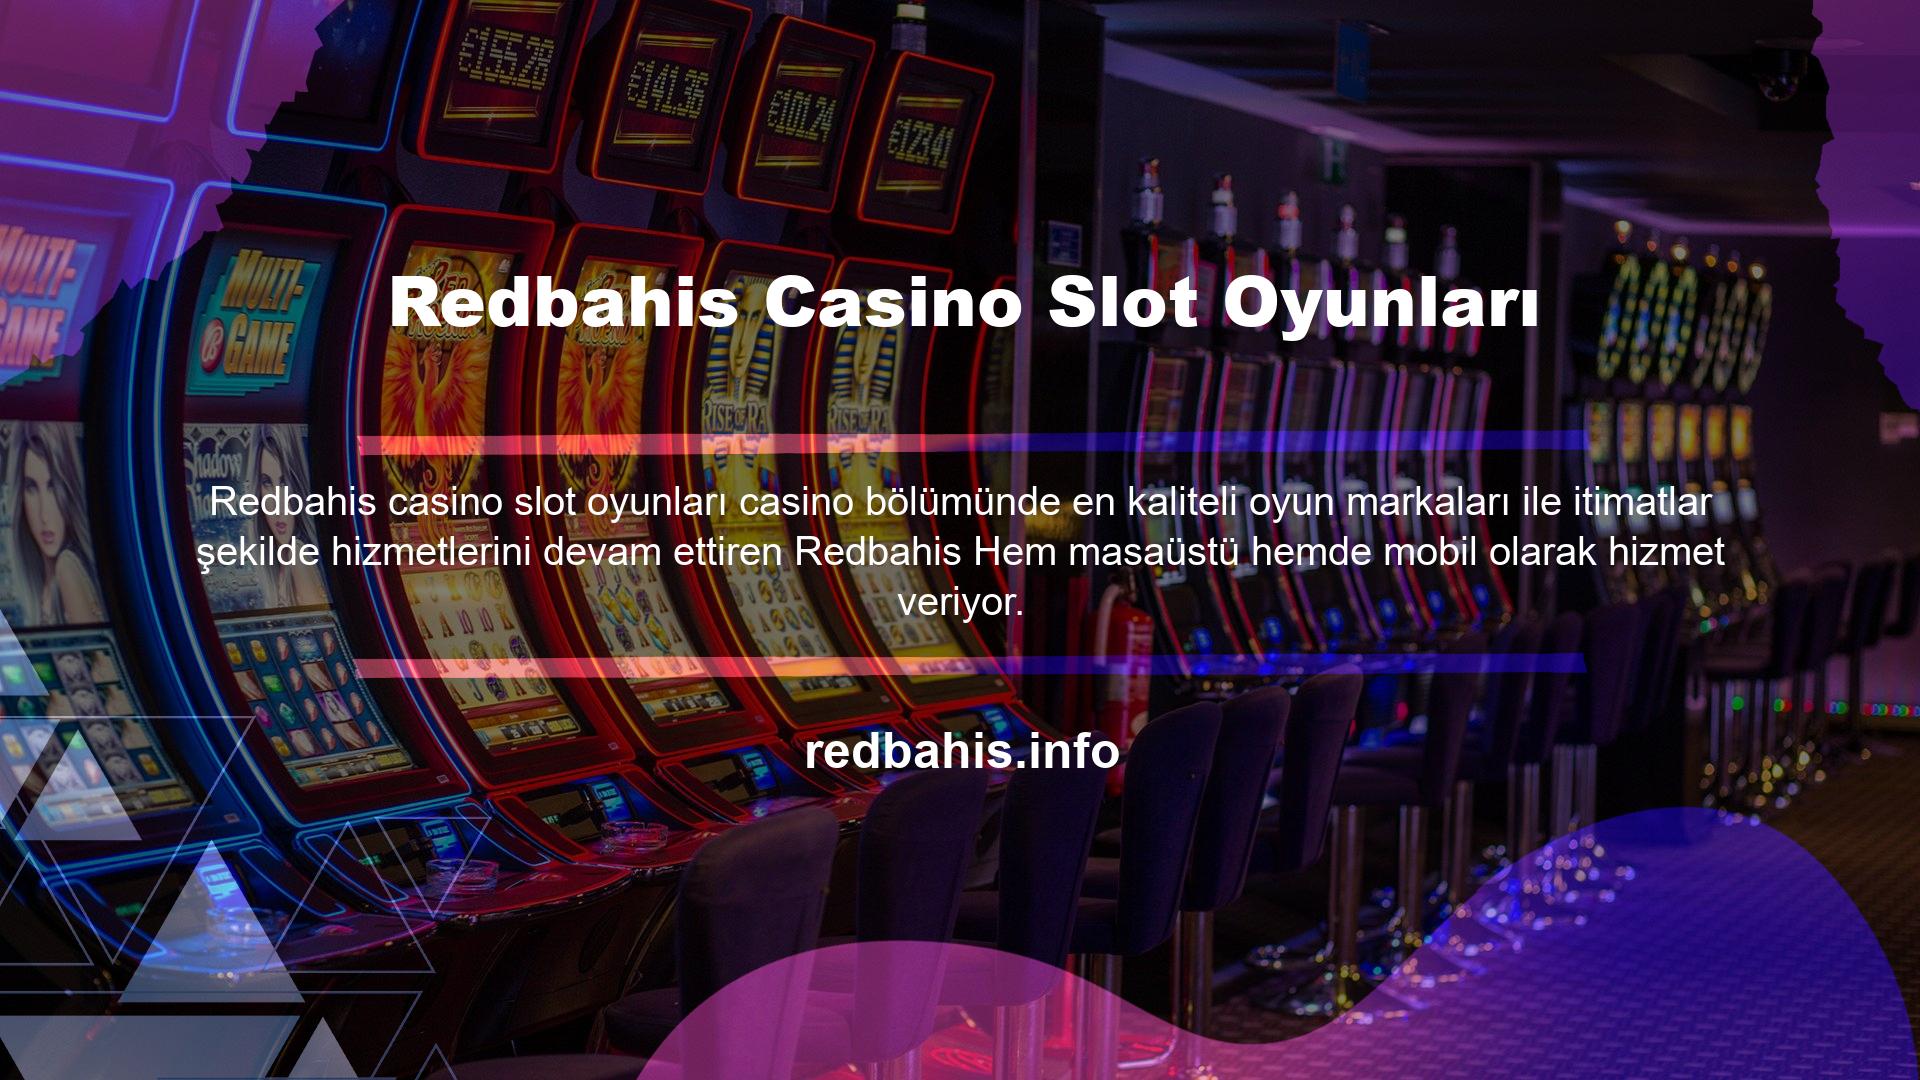 Redbahis Casino Slot Oyunları en kazançlı slot oyunlarını bünyesine katarak casino tutkunlarının olmazsa olmazı bir platform olmayı başarmıştır